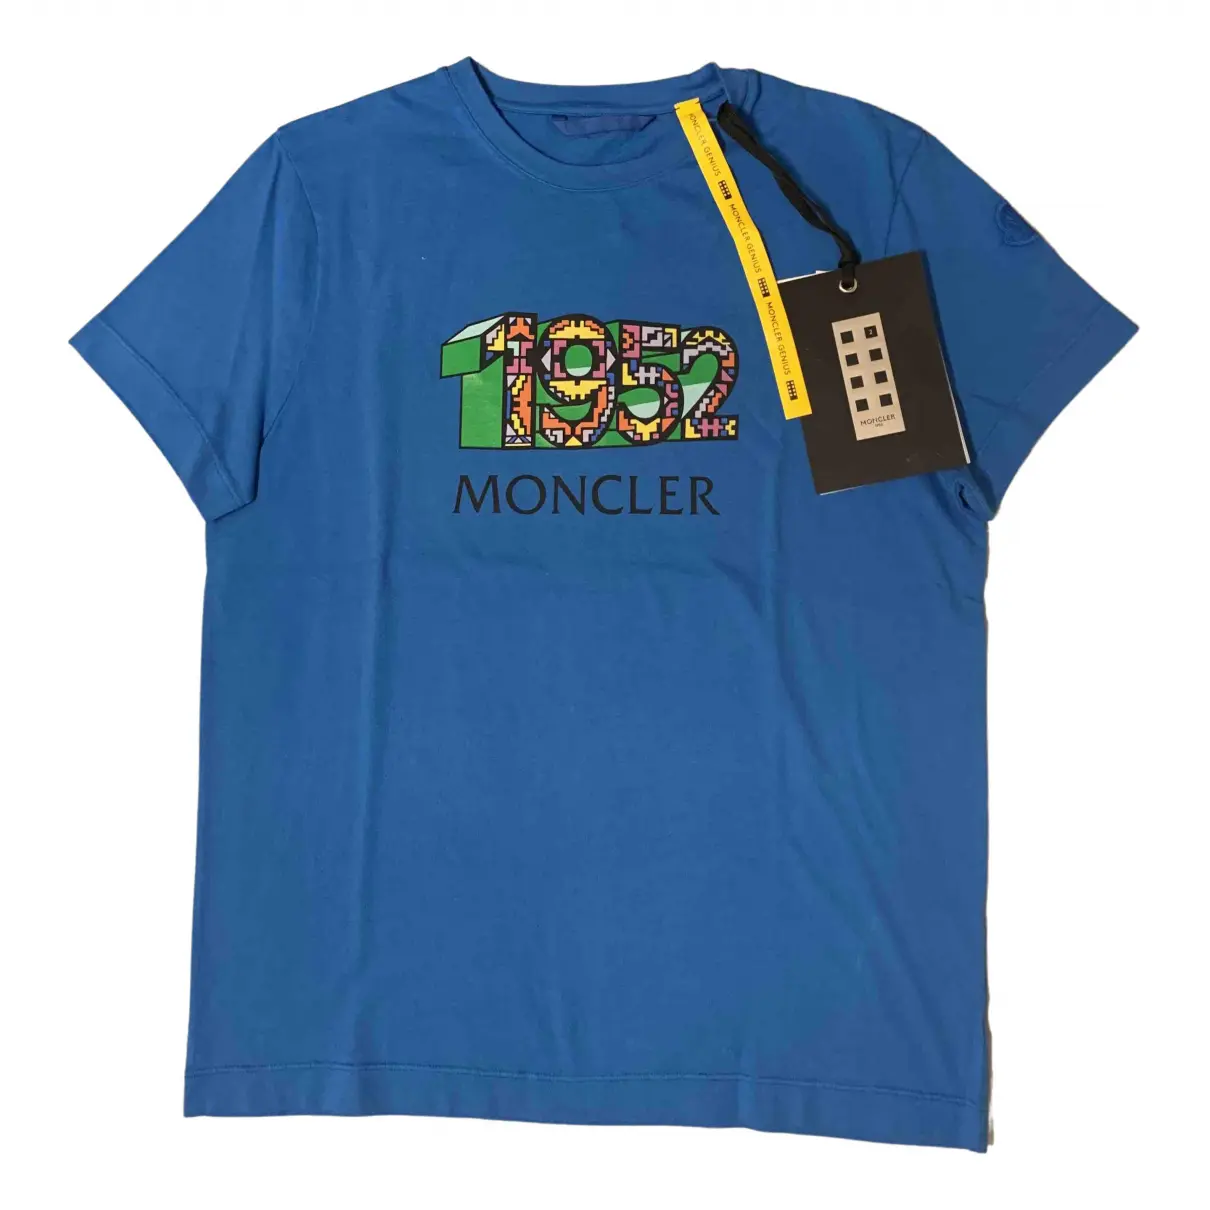 Moncler n°2 1952 + Valextra t-shirt Moncler Genius